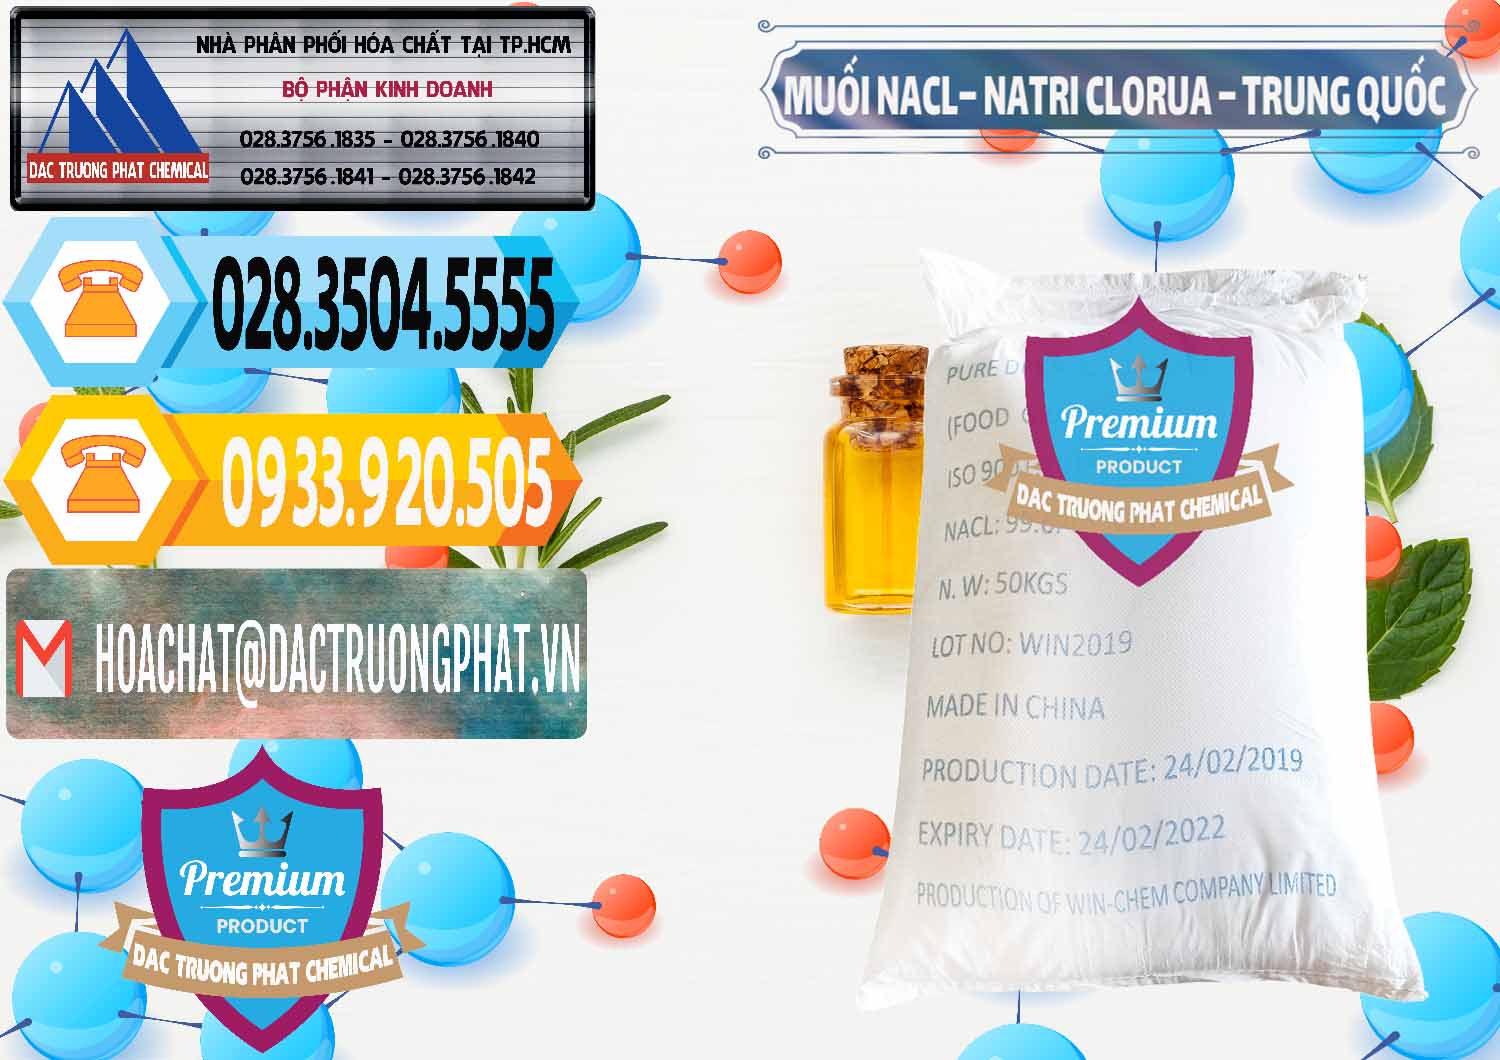 Đơn vị bán và cung cấp Muối NaCL – Sodium Chloride Trung Quốc China - 0097 - Phân phối ( cung cấp ) hóa chất tại TP.HCM - hoachattayrua.net